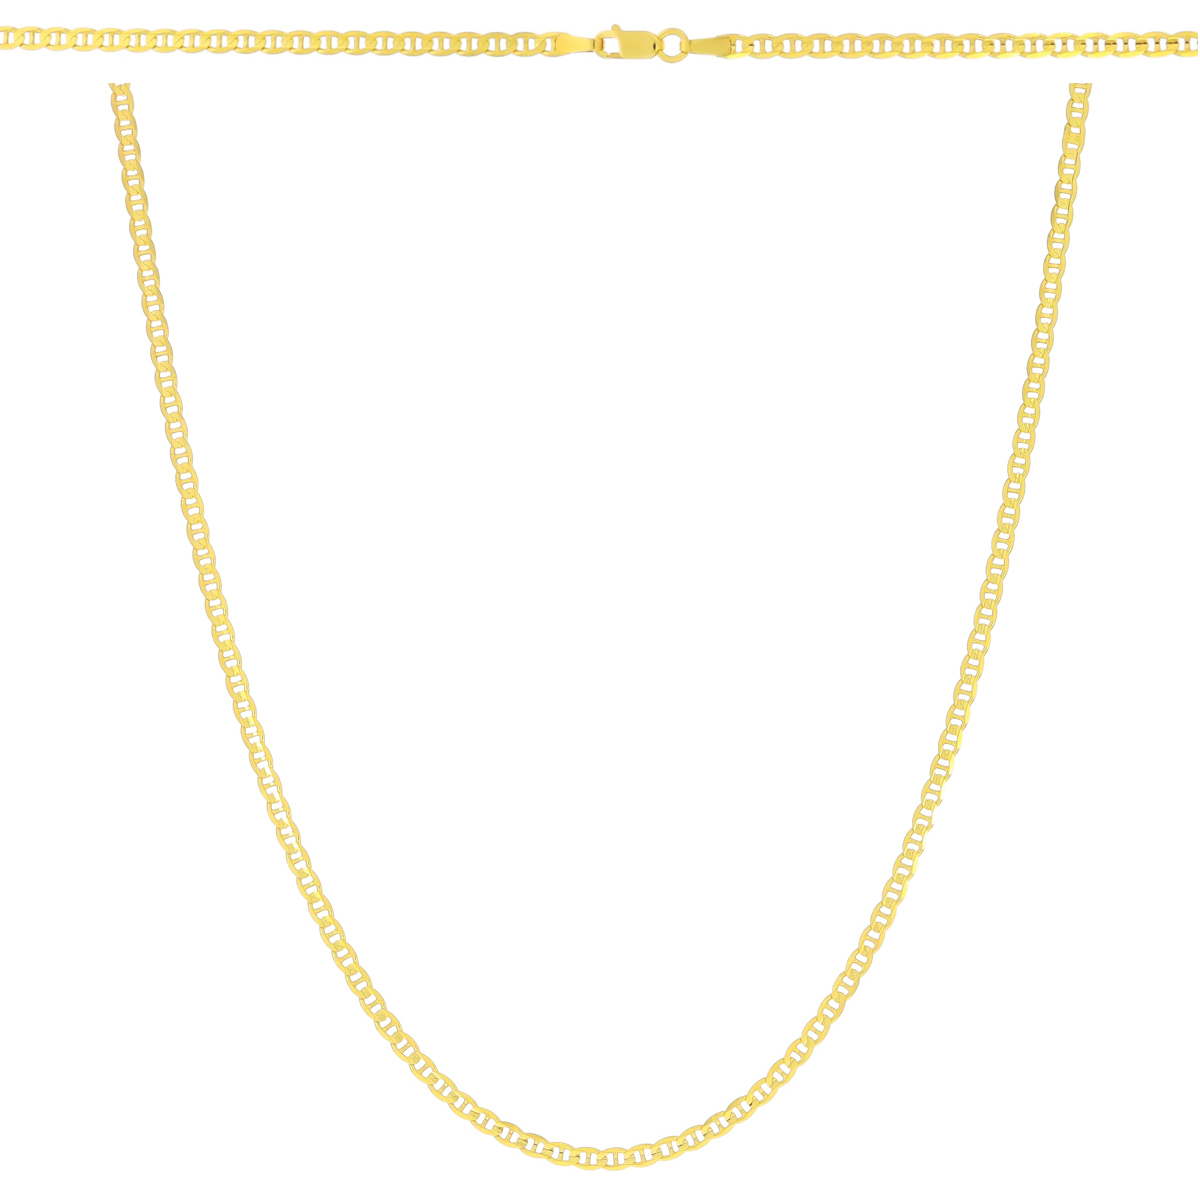 Złoty łańcuszek Gucci 55 cm pr. 585 (7.63g)